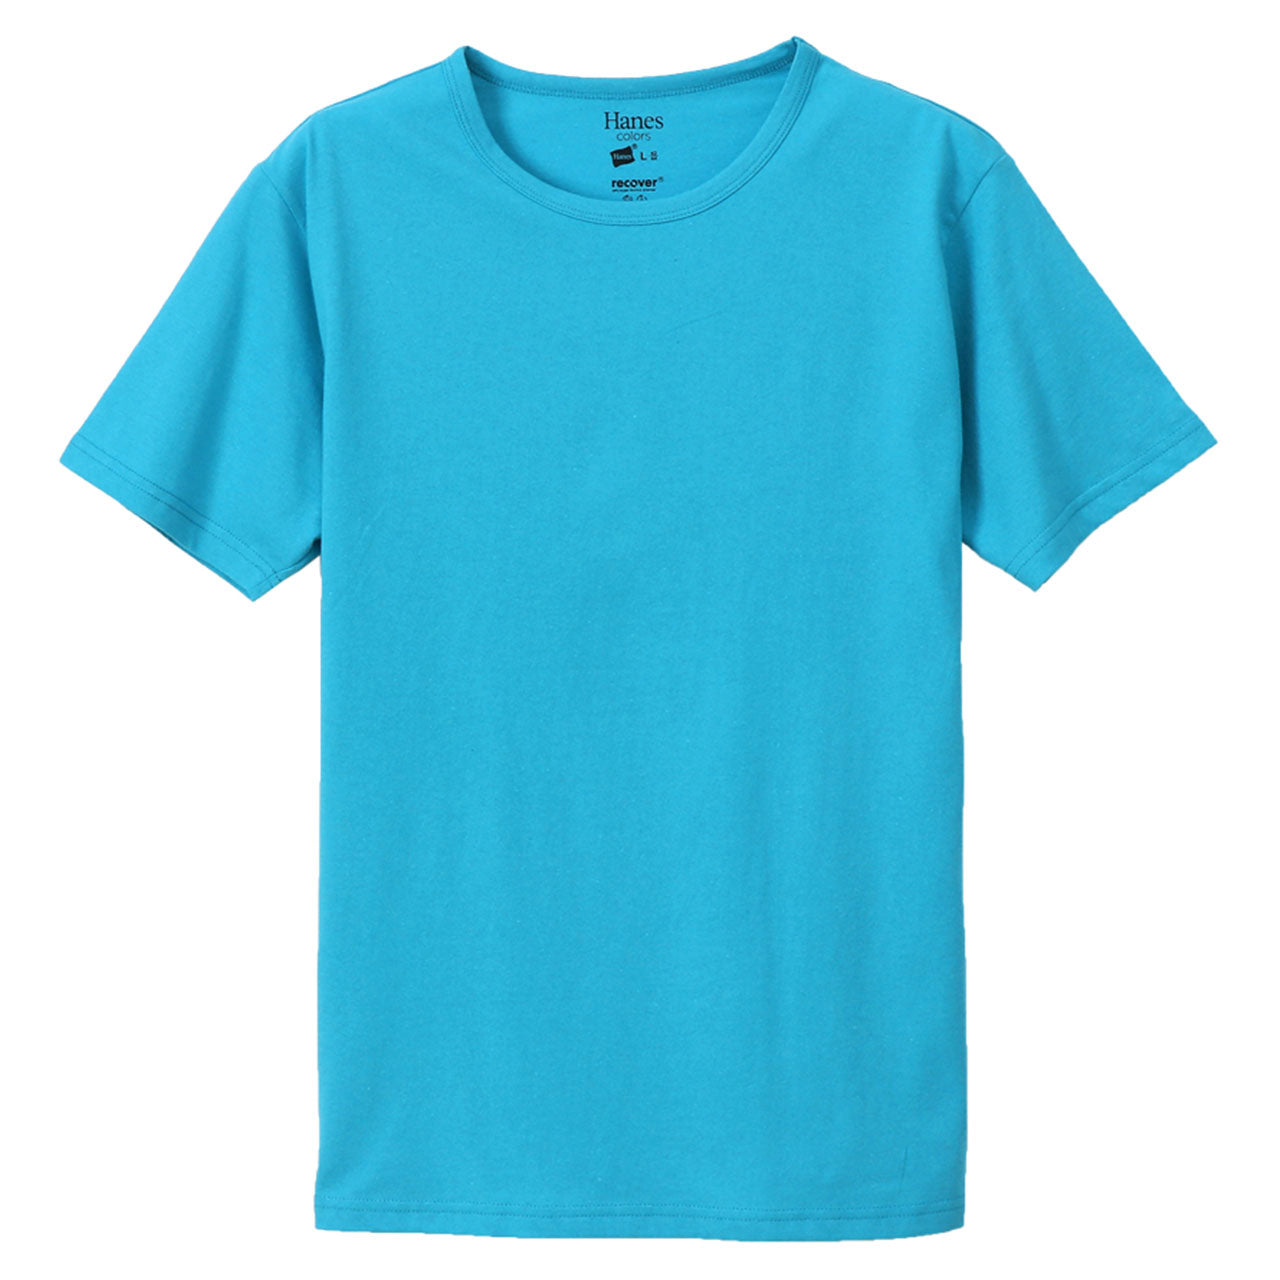 ヘインズ Tシャツ 半袖 メンズ レディース M・L (トップス ユニセックス シャツ クルーネック インナー 白 グレー hanes) (在庫限り)